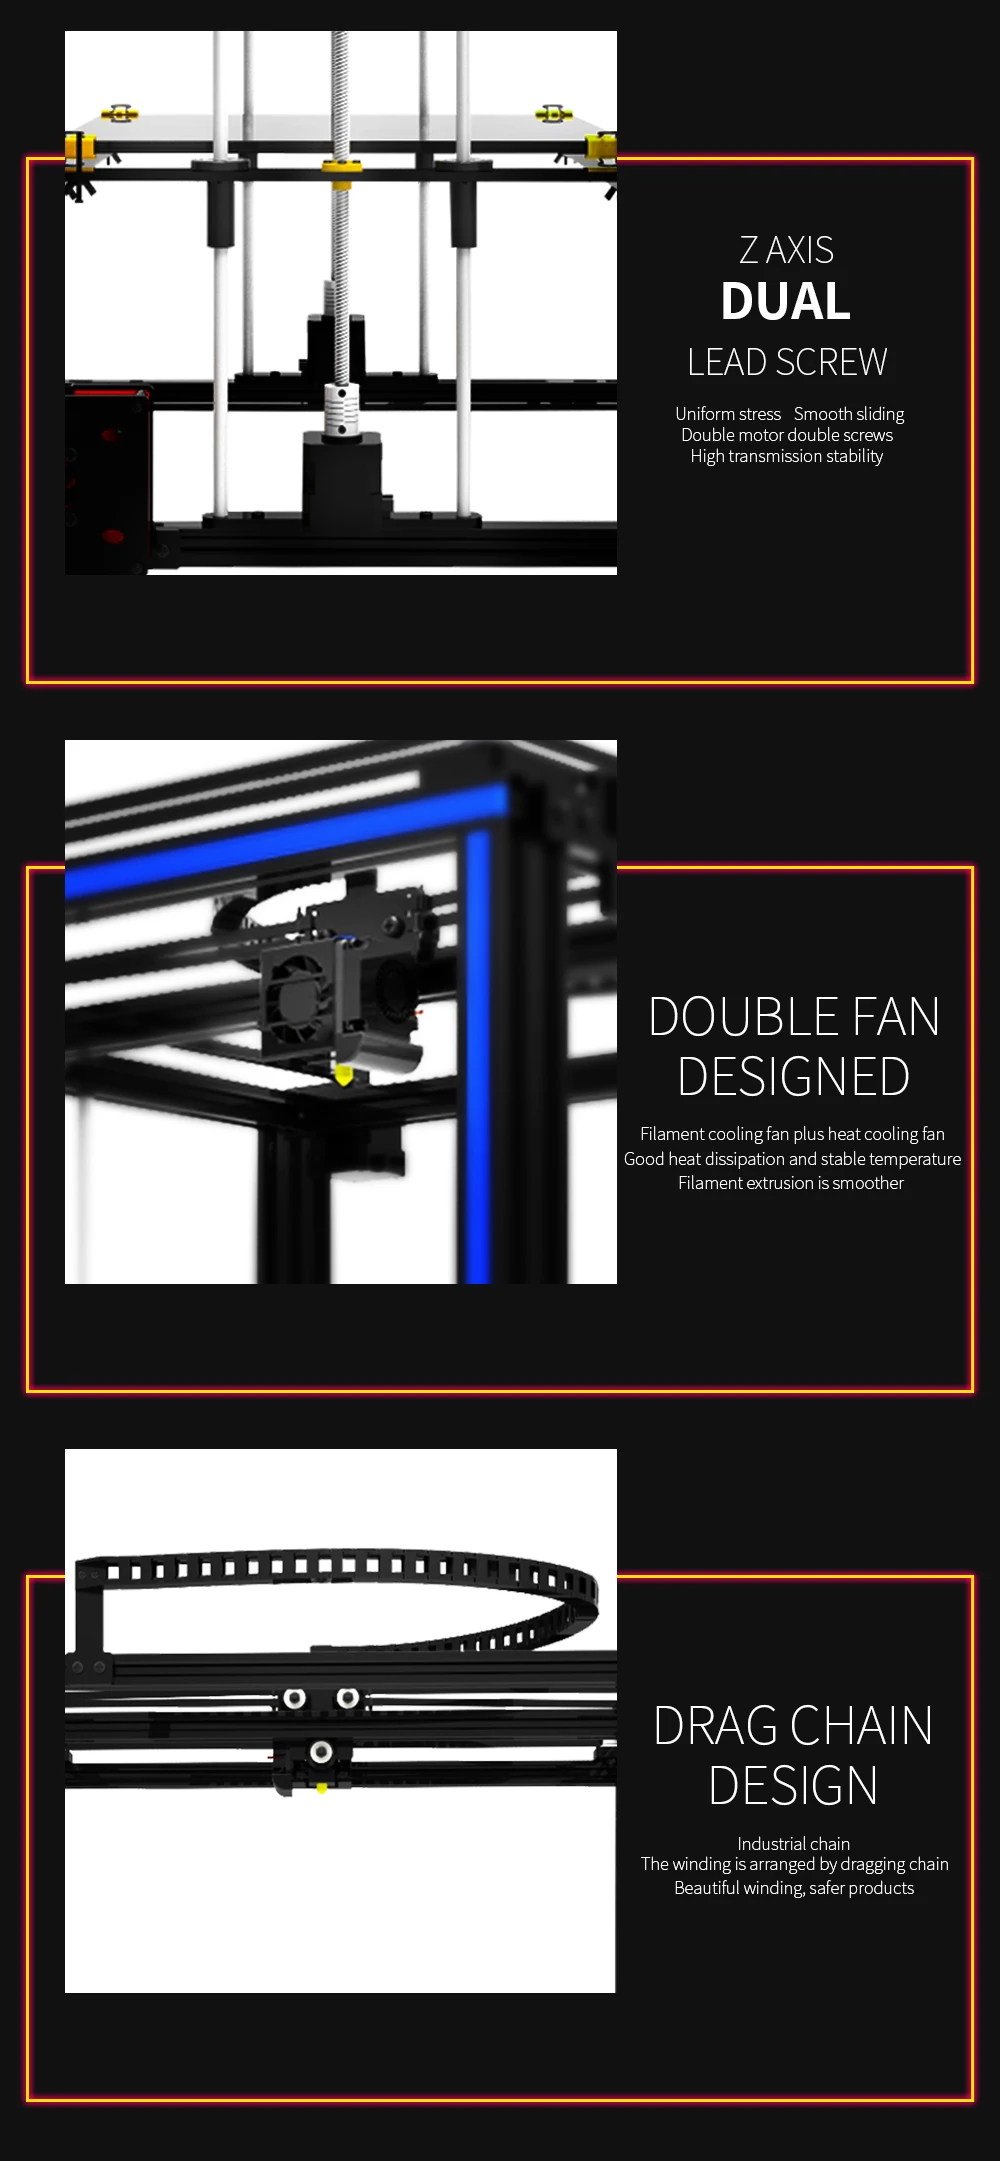 Новые большой размер печати tronxy X5S 3D-принтеры большой области печати CoreXY Системы алюминиевая конструкция 12864 P ЖК-дисплей 8 г SD карты